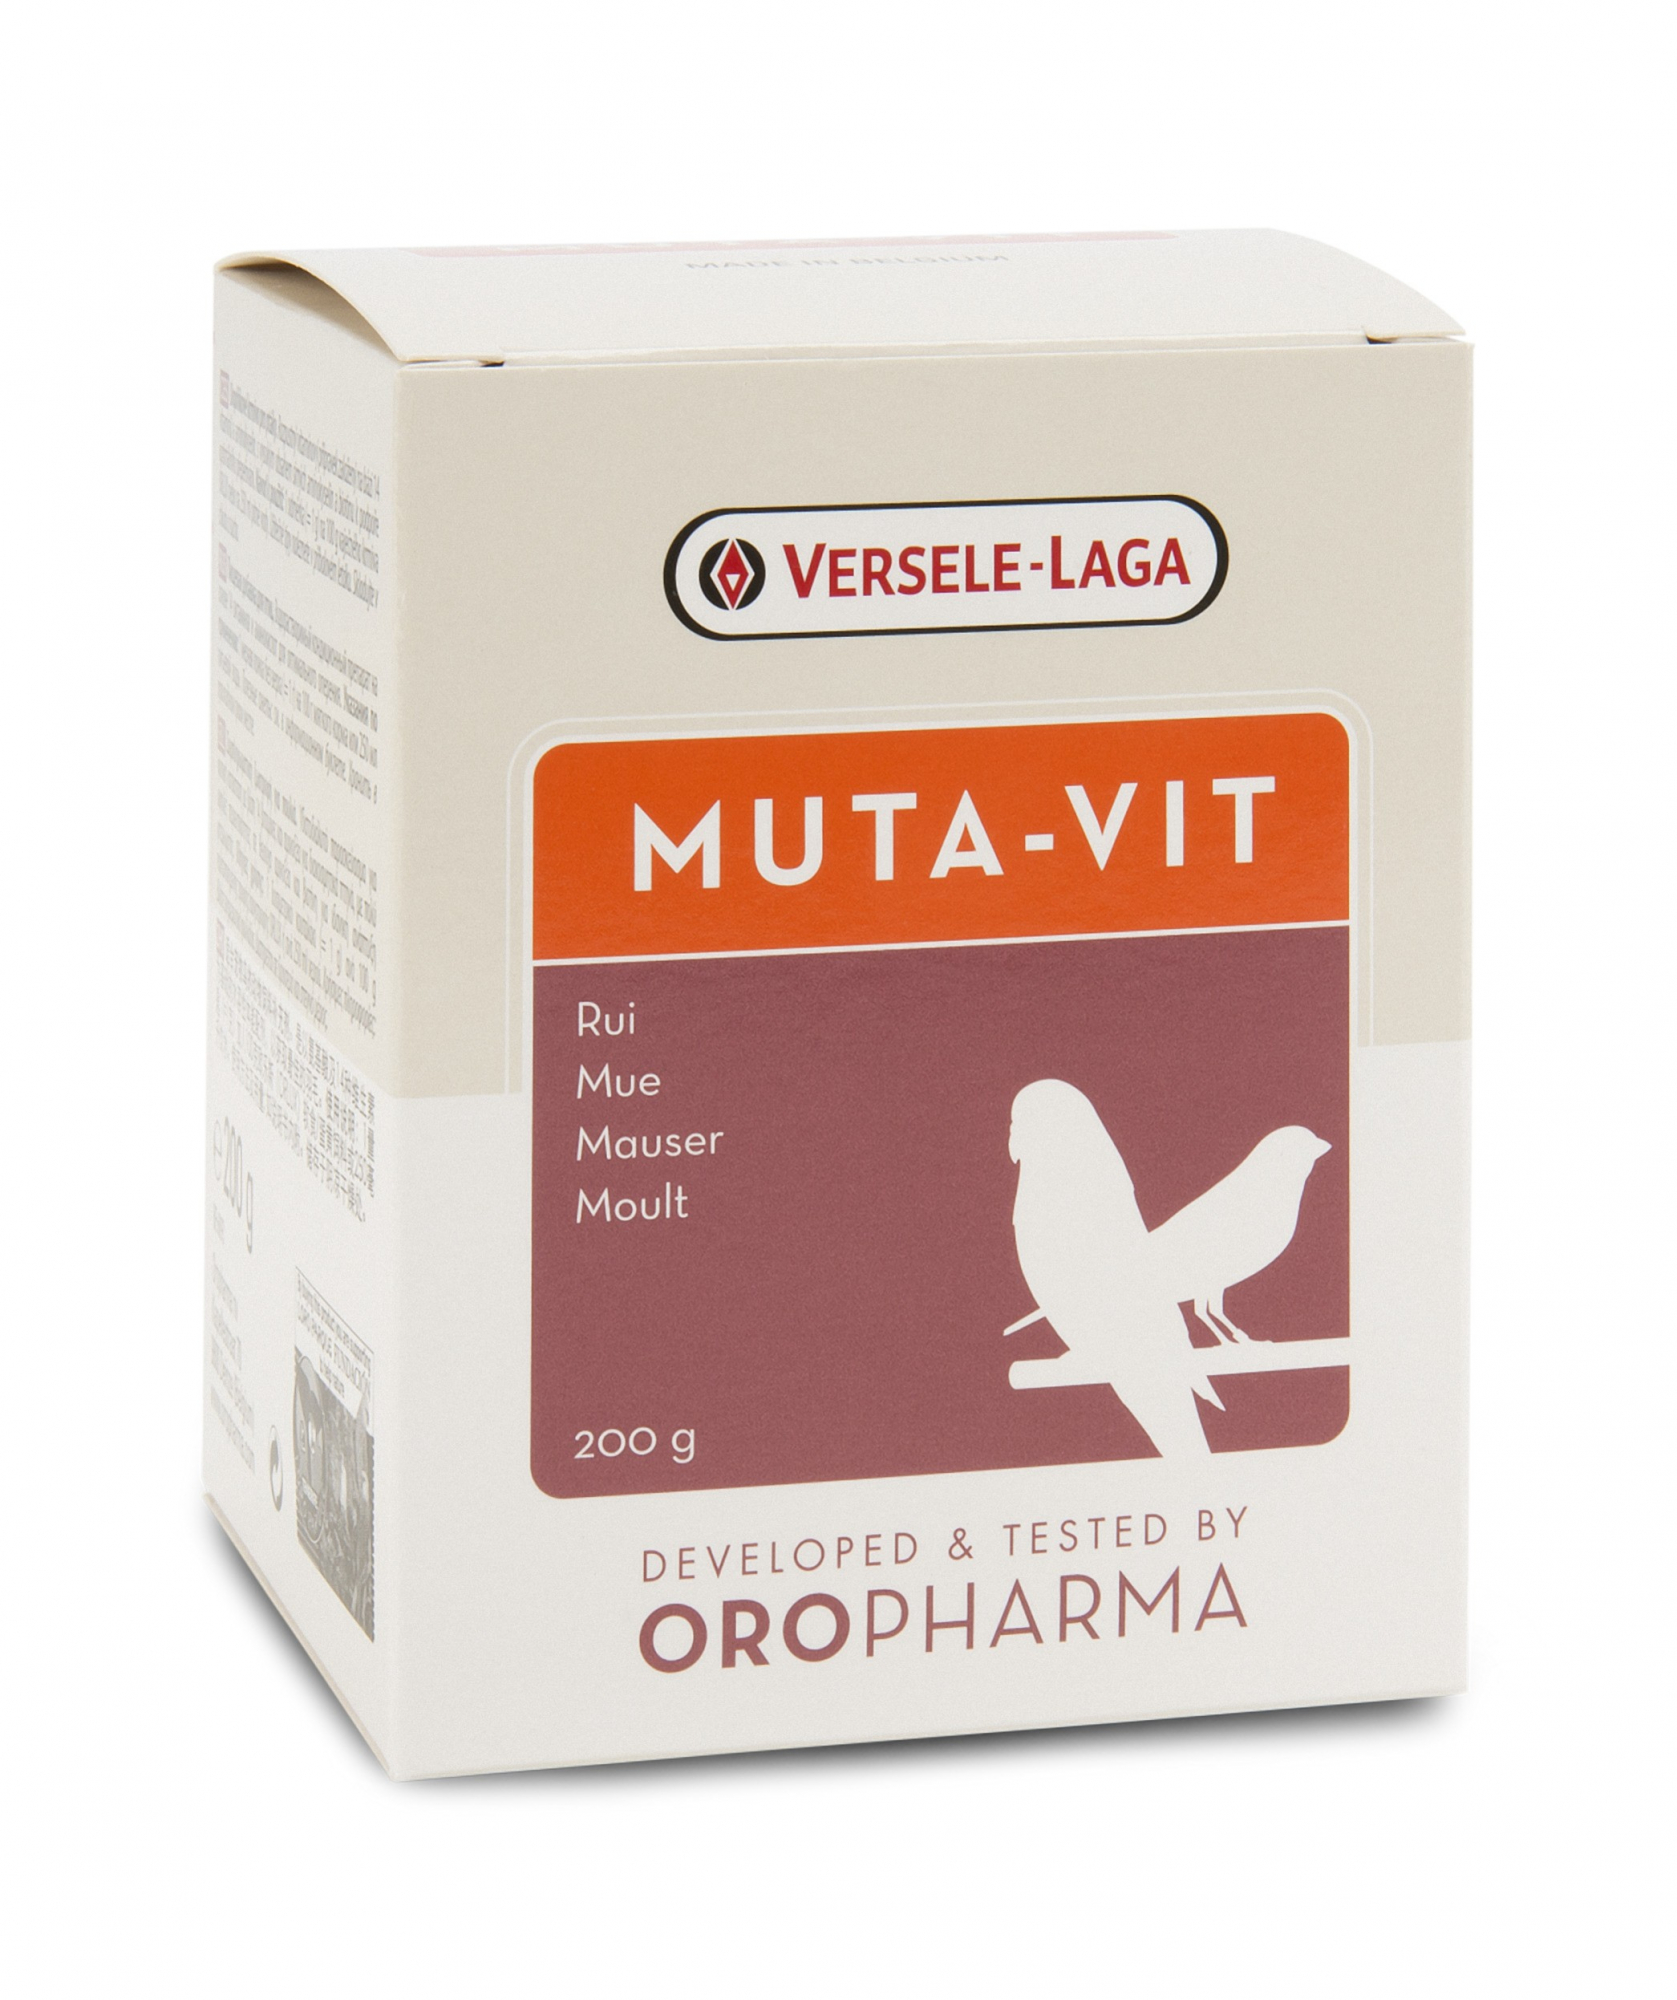 Oropharma Muta-Vit mélange de vitamines pour la mue